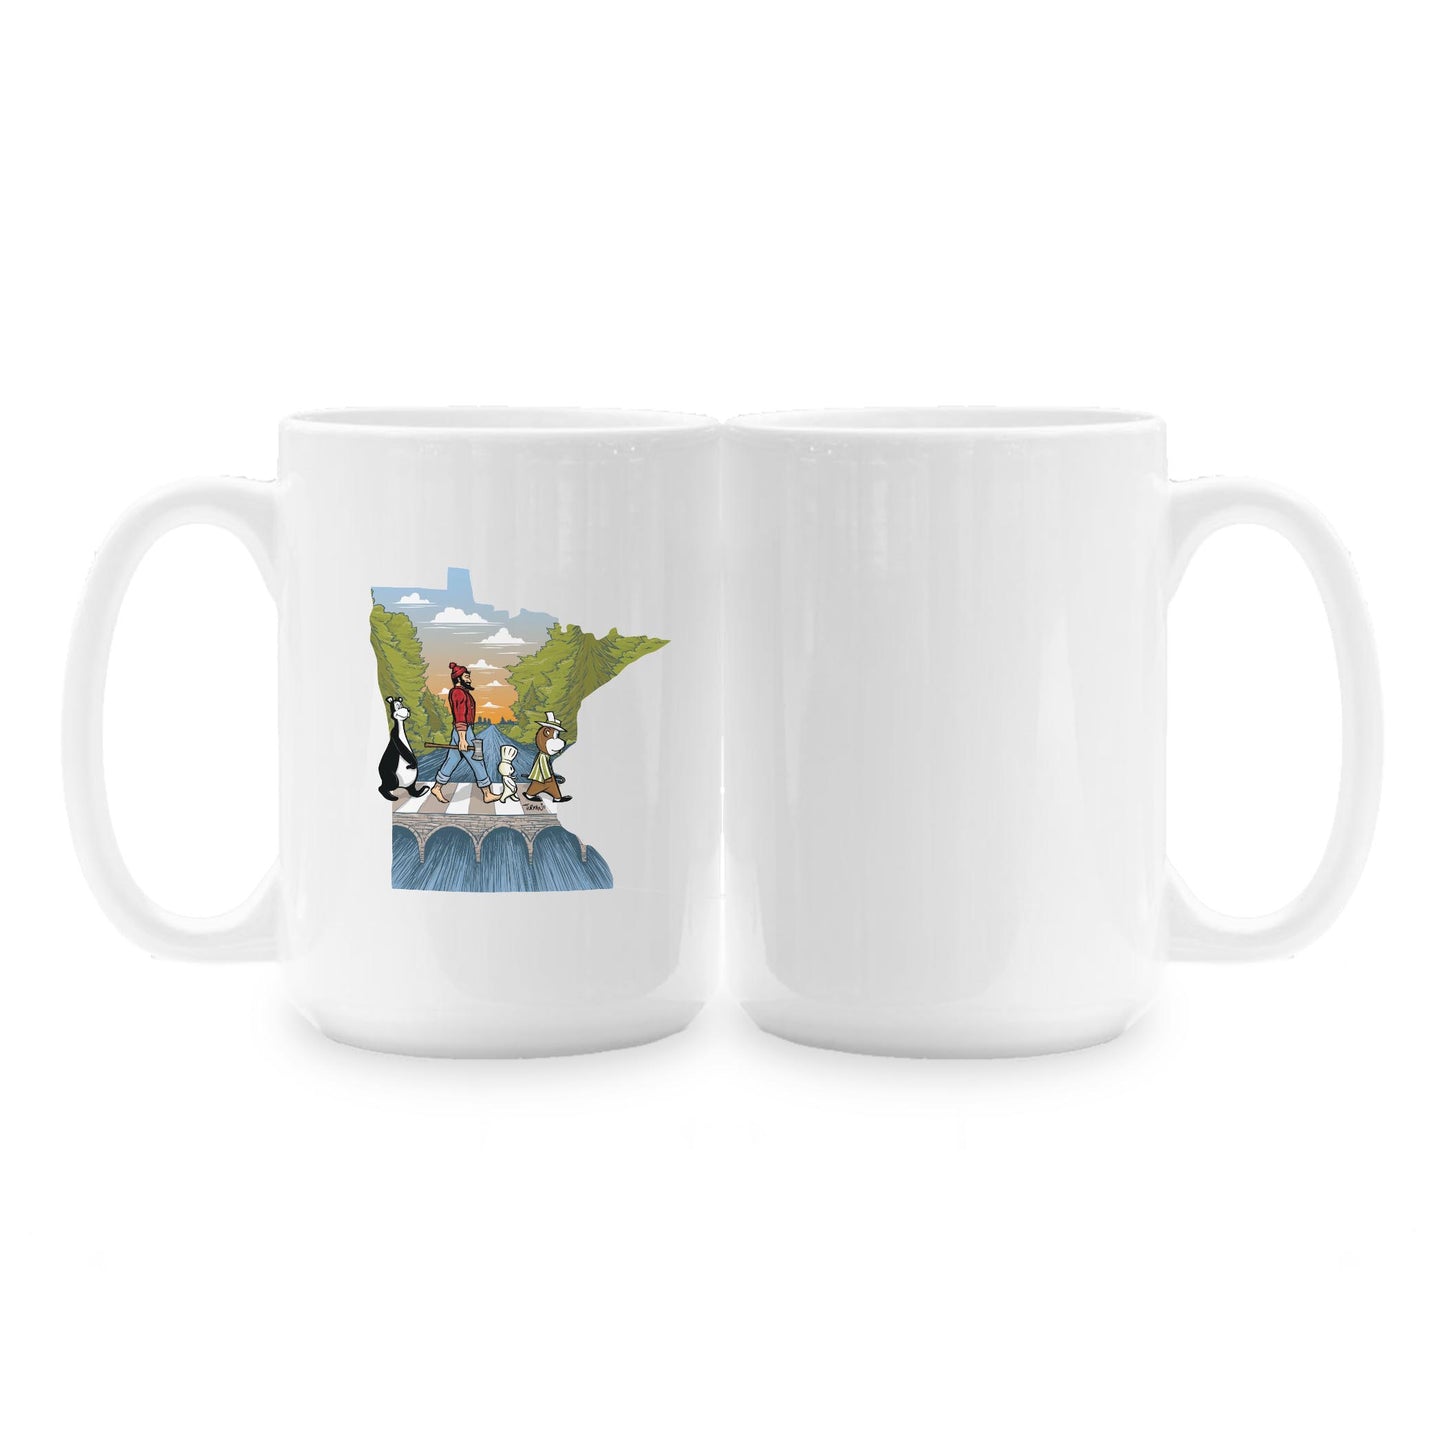 15oz Coffee Mug White-Minnesota Abbey Road